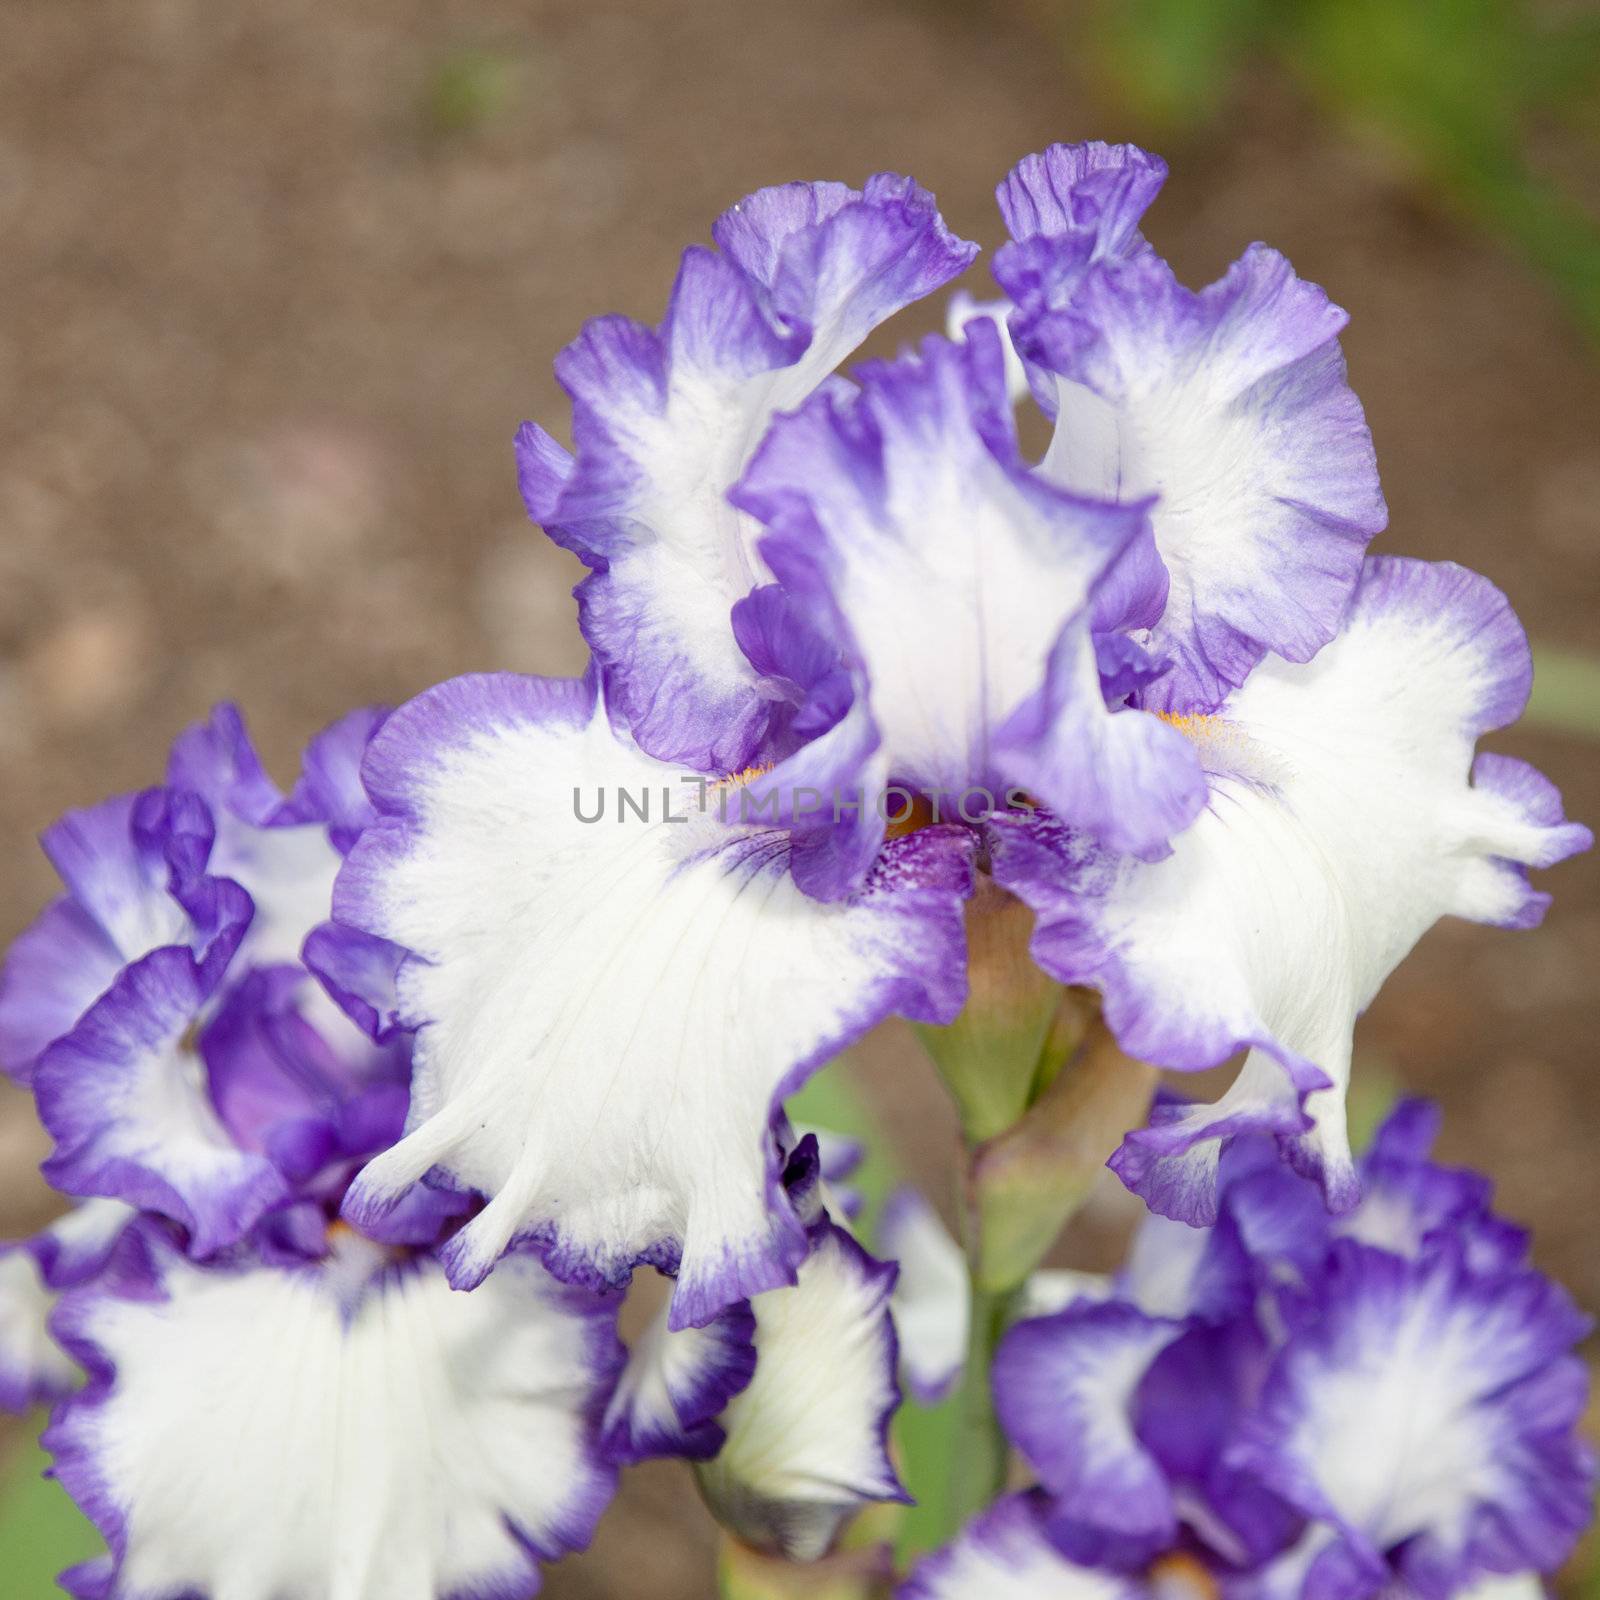 Iris is a genus of 260 species of flowering plants with showy flowers.